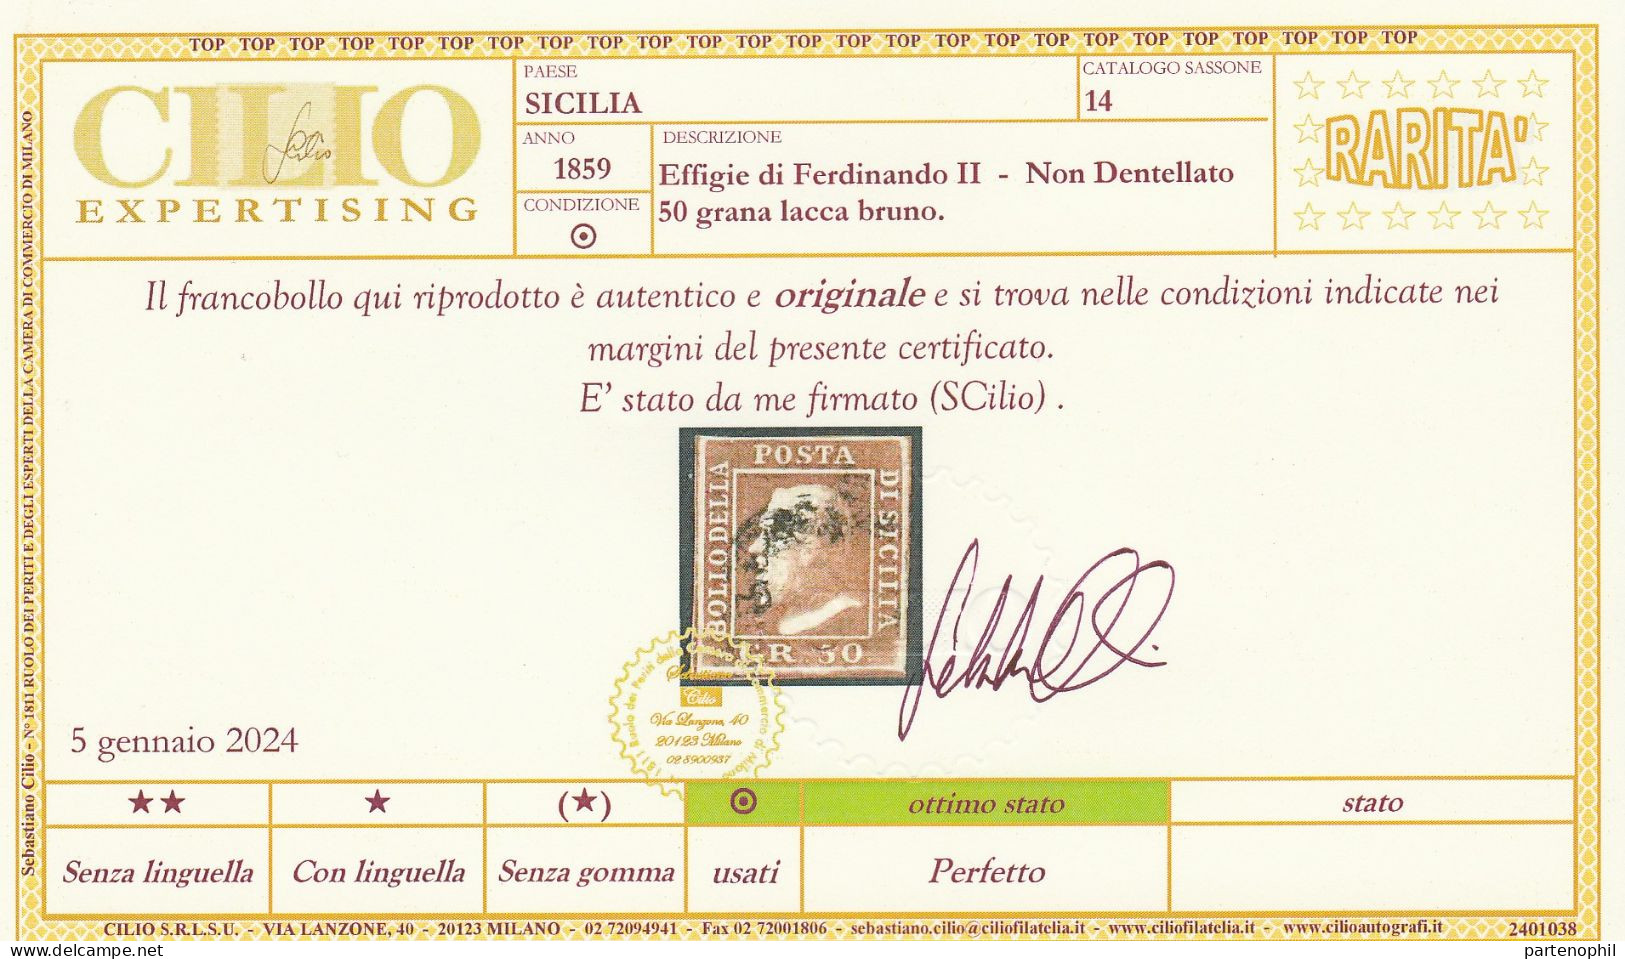 54 - Sicilia 1859 - 50 Gr. Lacca Bruno N. 14. Firmato E. E A. Diena, Oliva. Cert. Cilio. Cat. € 12000,00. Molto Bello, - Sicily